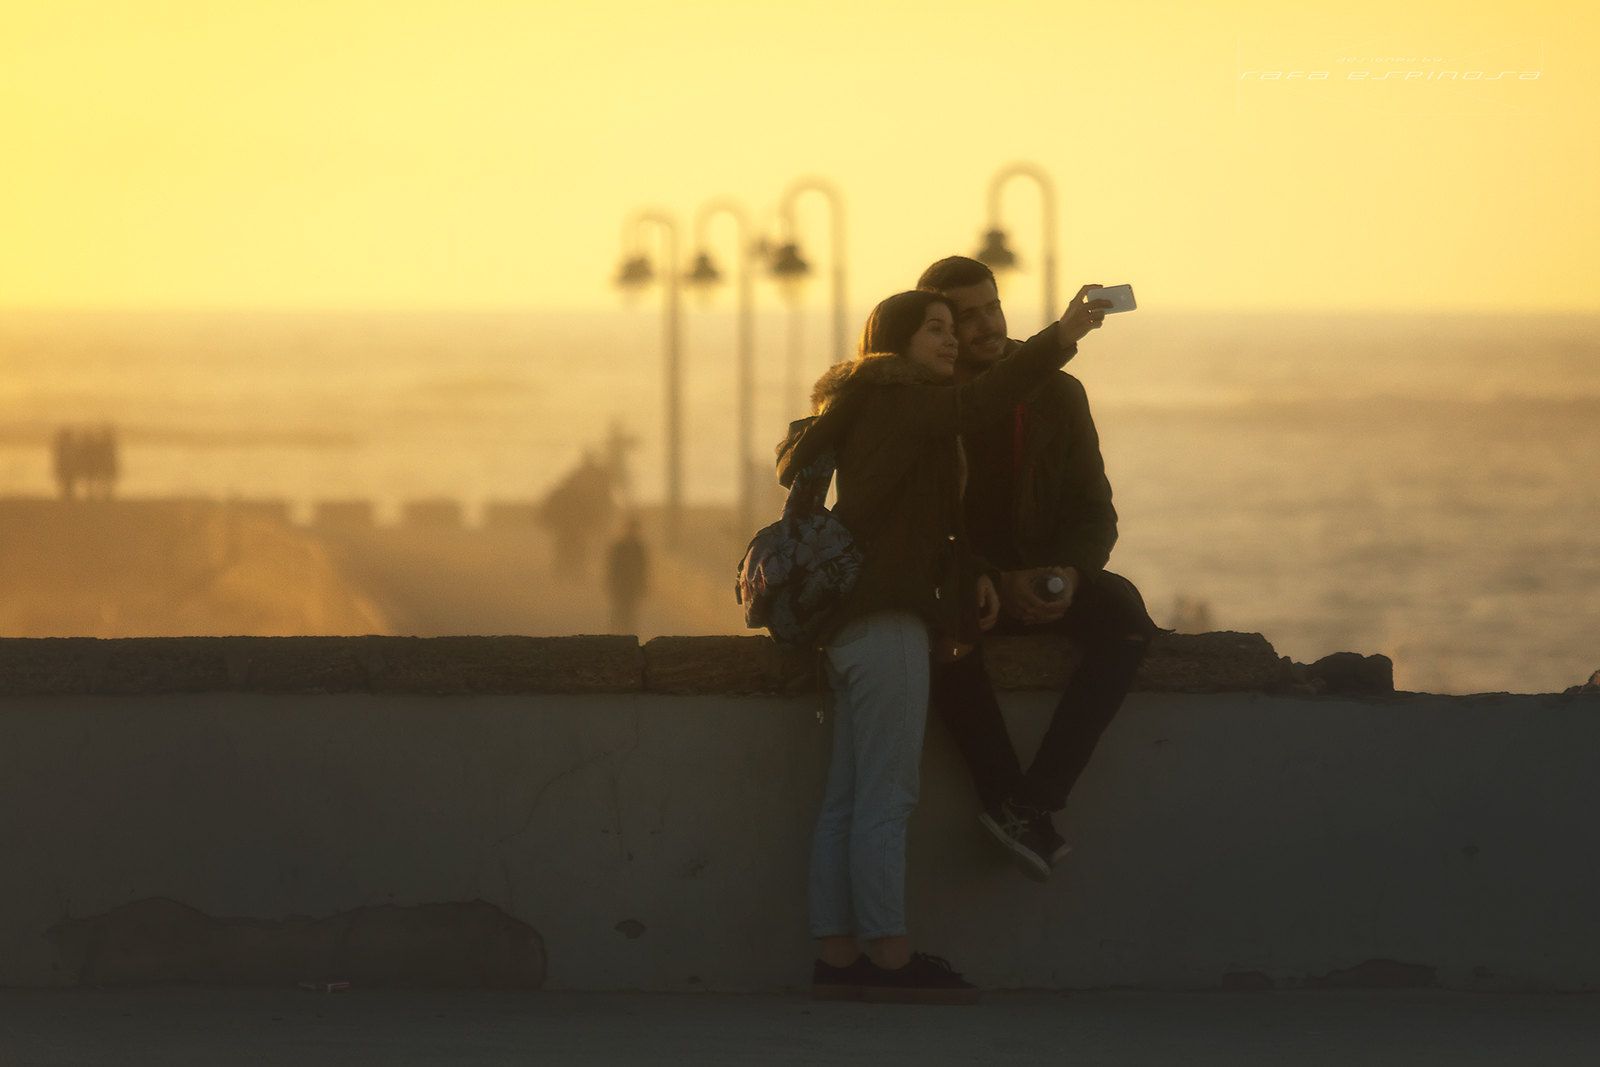 Dos jóvenes haciéndose una foto en Cádiz. Foto: Rafael Espinosa Adriano. 'De paseo por Cádiz' Flickr (chronoss).